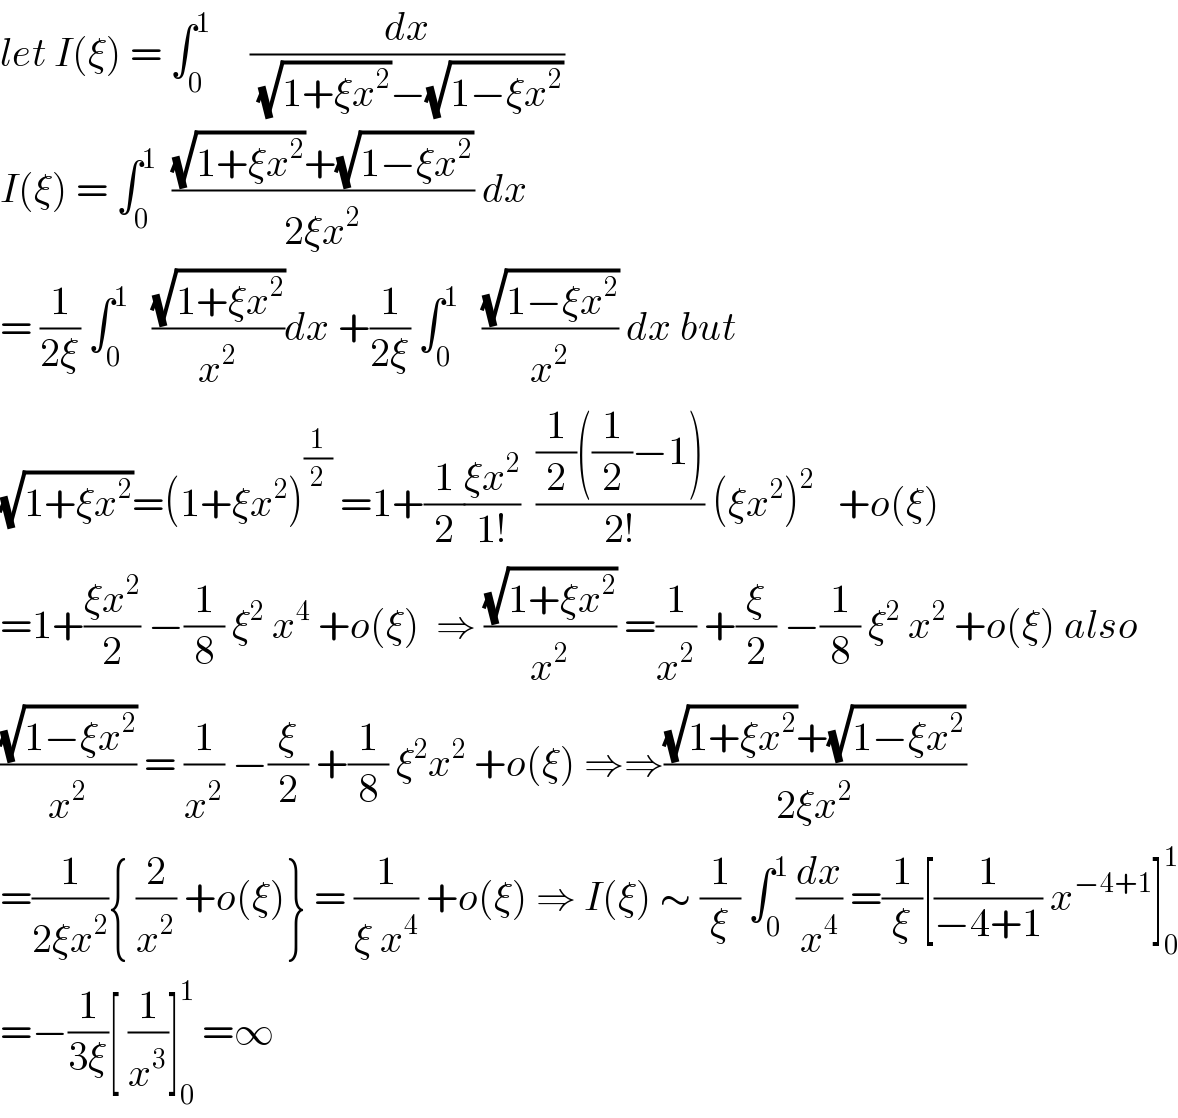 let I(ξ) = ∫_0 ^1      (dx/((√(1+ξx^2 ))−(√(1−ξx^2 ))))   I(ξ) = ∫_0 ^1   (((√(1+ξx^2 ))+(√(1−ξx^2 )))/(2ξx^2 )) dx  = (1/(2ξ)) ∫_0 ^1    ((√(1+ξx^2 ))/x^2 )dx +(1/(2ξ)) ∫_0 ^1    ((√(1−ξx^2 ))/x^2 ) dx but   (√(1+ξx^2 ))=(1+ξx^2 )^(1/2)  =1+(1/2)((ξx^2 )/(1!))  (((1/2)((1/2)−1))/(2!)) (ξx^2 )^2    +o(ξ)  =1+((ξx^2 )/2) −(1/8) ξ^2  x^4  +o(ξ)  ⇒ ((√(1+ξx^2 ))/x^2 ) =(1/x^2 ) +(ξ/2) −(1/8) ξ^2  x^2  +o(ξ) also  ((√(1−ξx^2 ))/x^2 ) = (1/x^2 ) −(ξ/2) +(1/8) ξ^2 x^2  +o(ξ) ⇒⇒(((√(1+ξx^2 ))+(√(1−ξx^2 )))/(2ξx^2 ))  =(1/(2ξx^2 )){ (2/x^2 ) +o(ξ)} = (1/(ξ x^4 )) +o(ξ) ⇒ I(ξ) ∼ (1/ξ) ∫_0 ^1  (dx/x^4 ) =(1/ξ)[(1/(−4+1)) x^(−4+1) ]_0 ^1   =−(1/(3ξ))[ (1/x^3 )]_0 ^1  =∞  